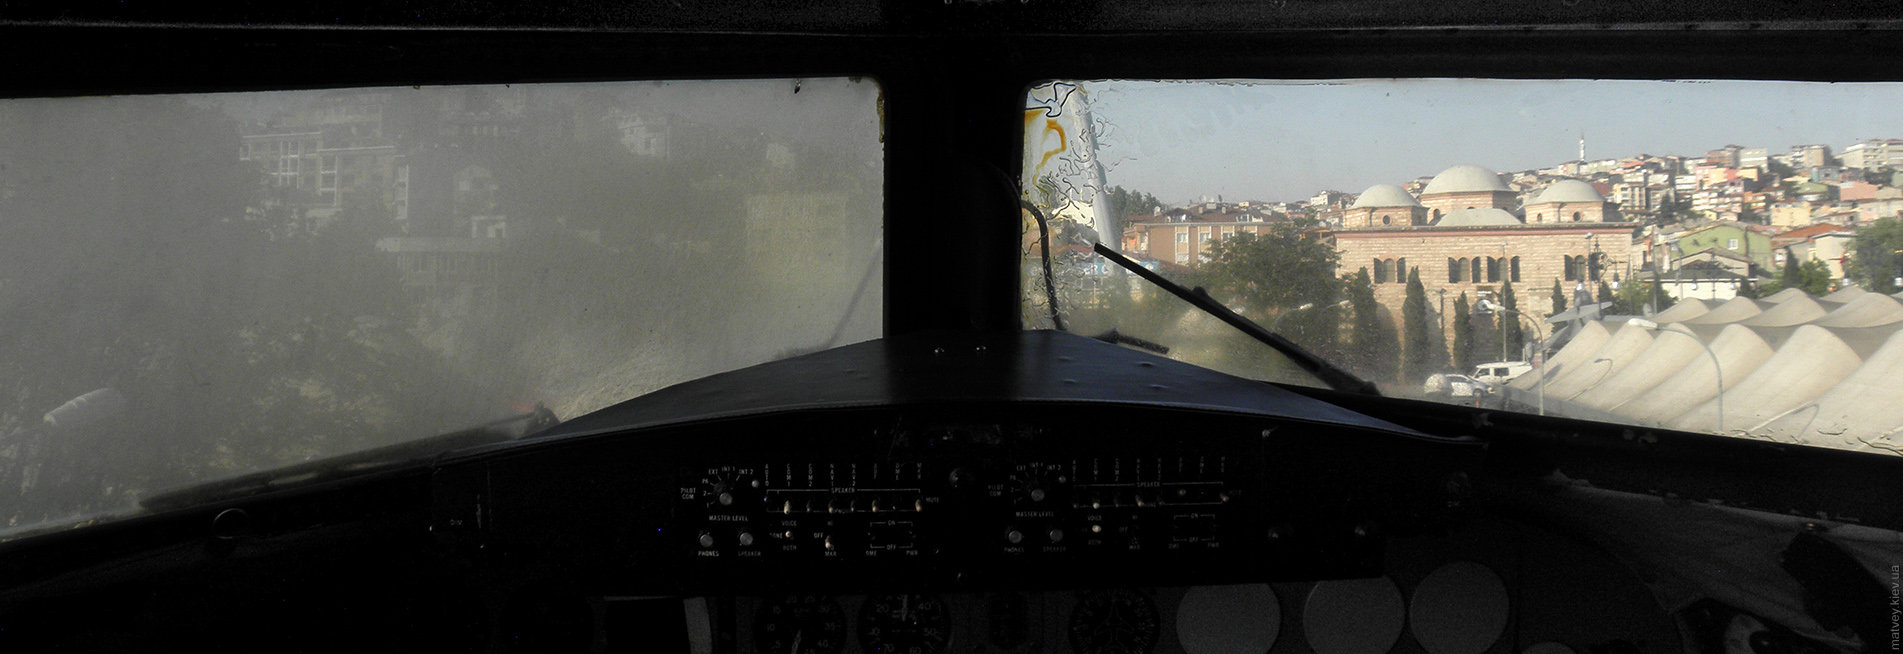 Вид на Хаскёй из кабины самолёта. Стамбул, Турция